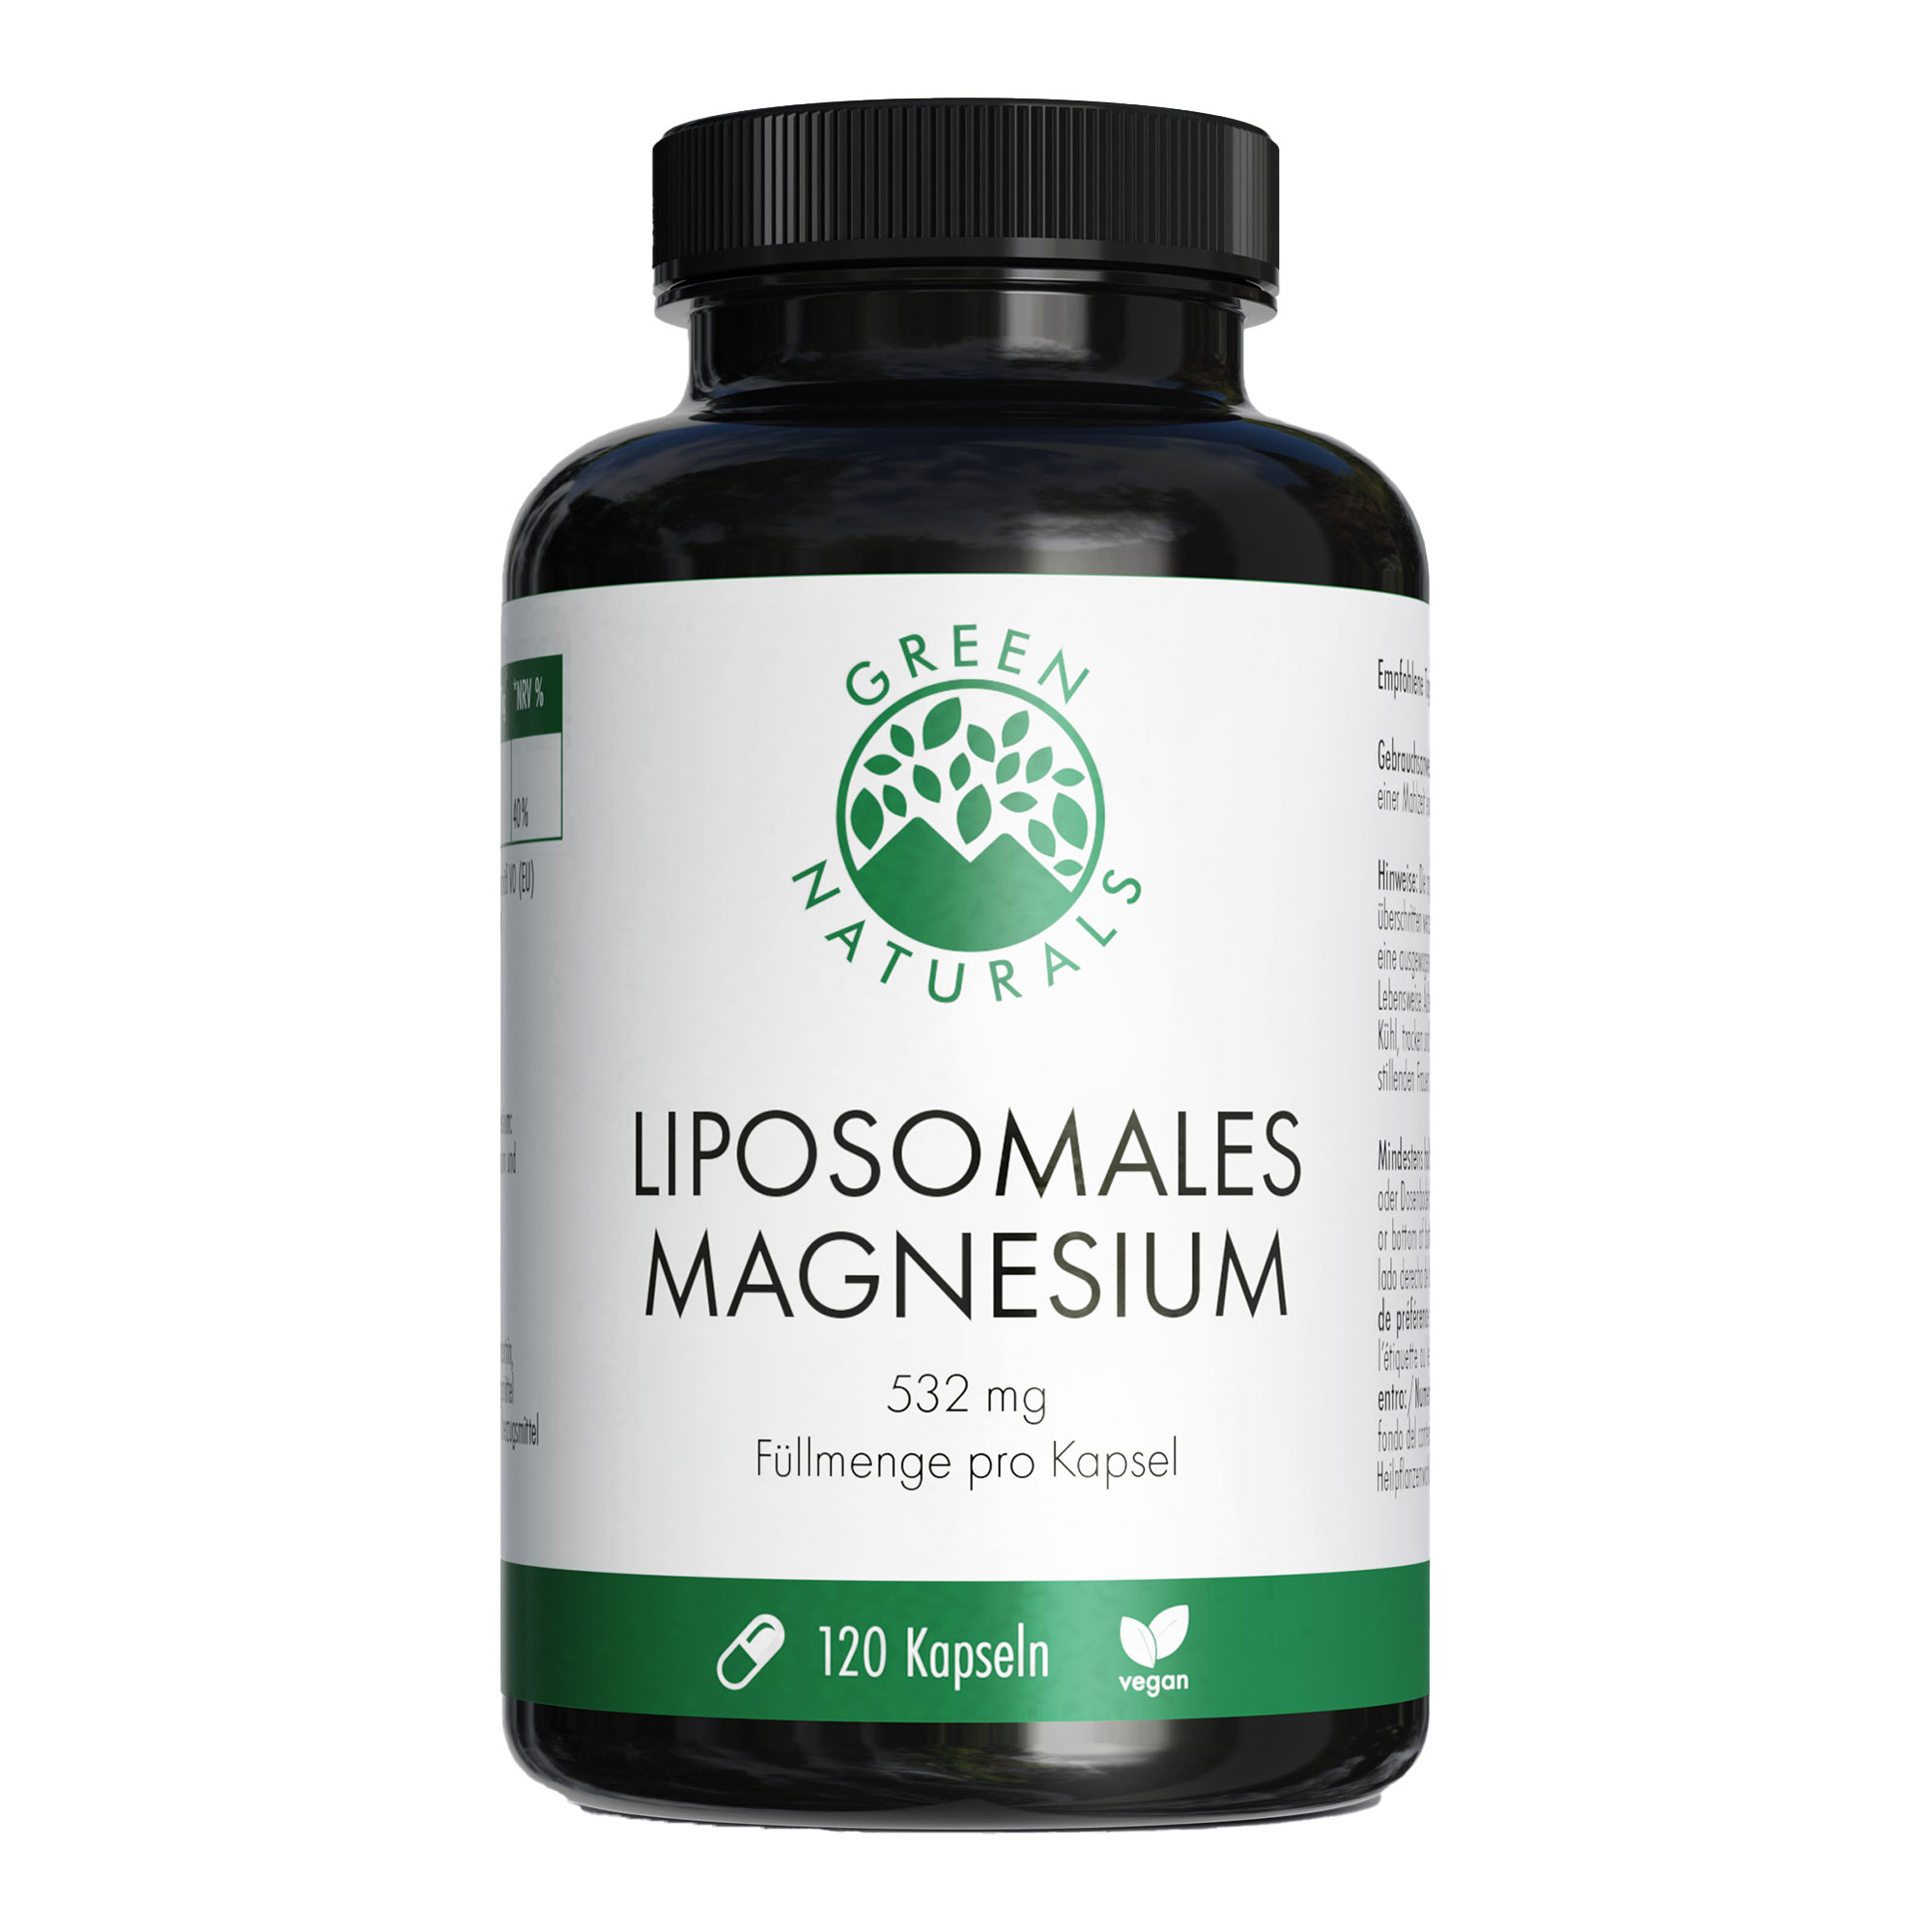 Nahrungsergänzungsmittel mit Magnesium und Sonnenblumenlecithinen.